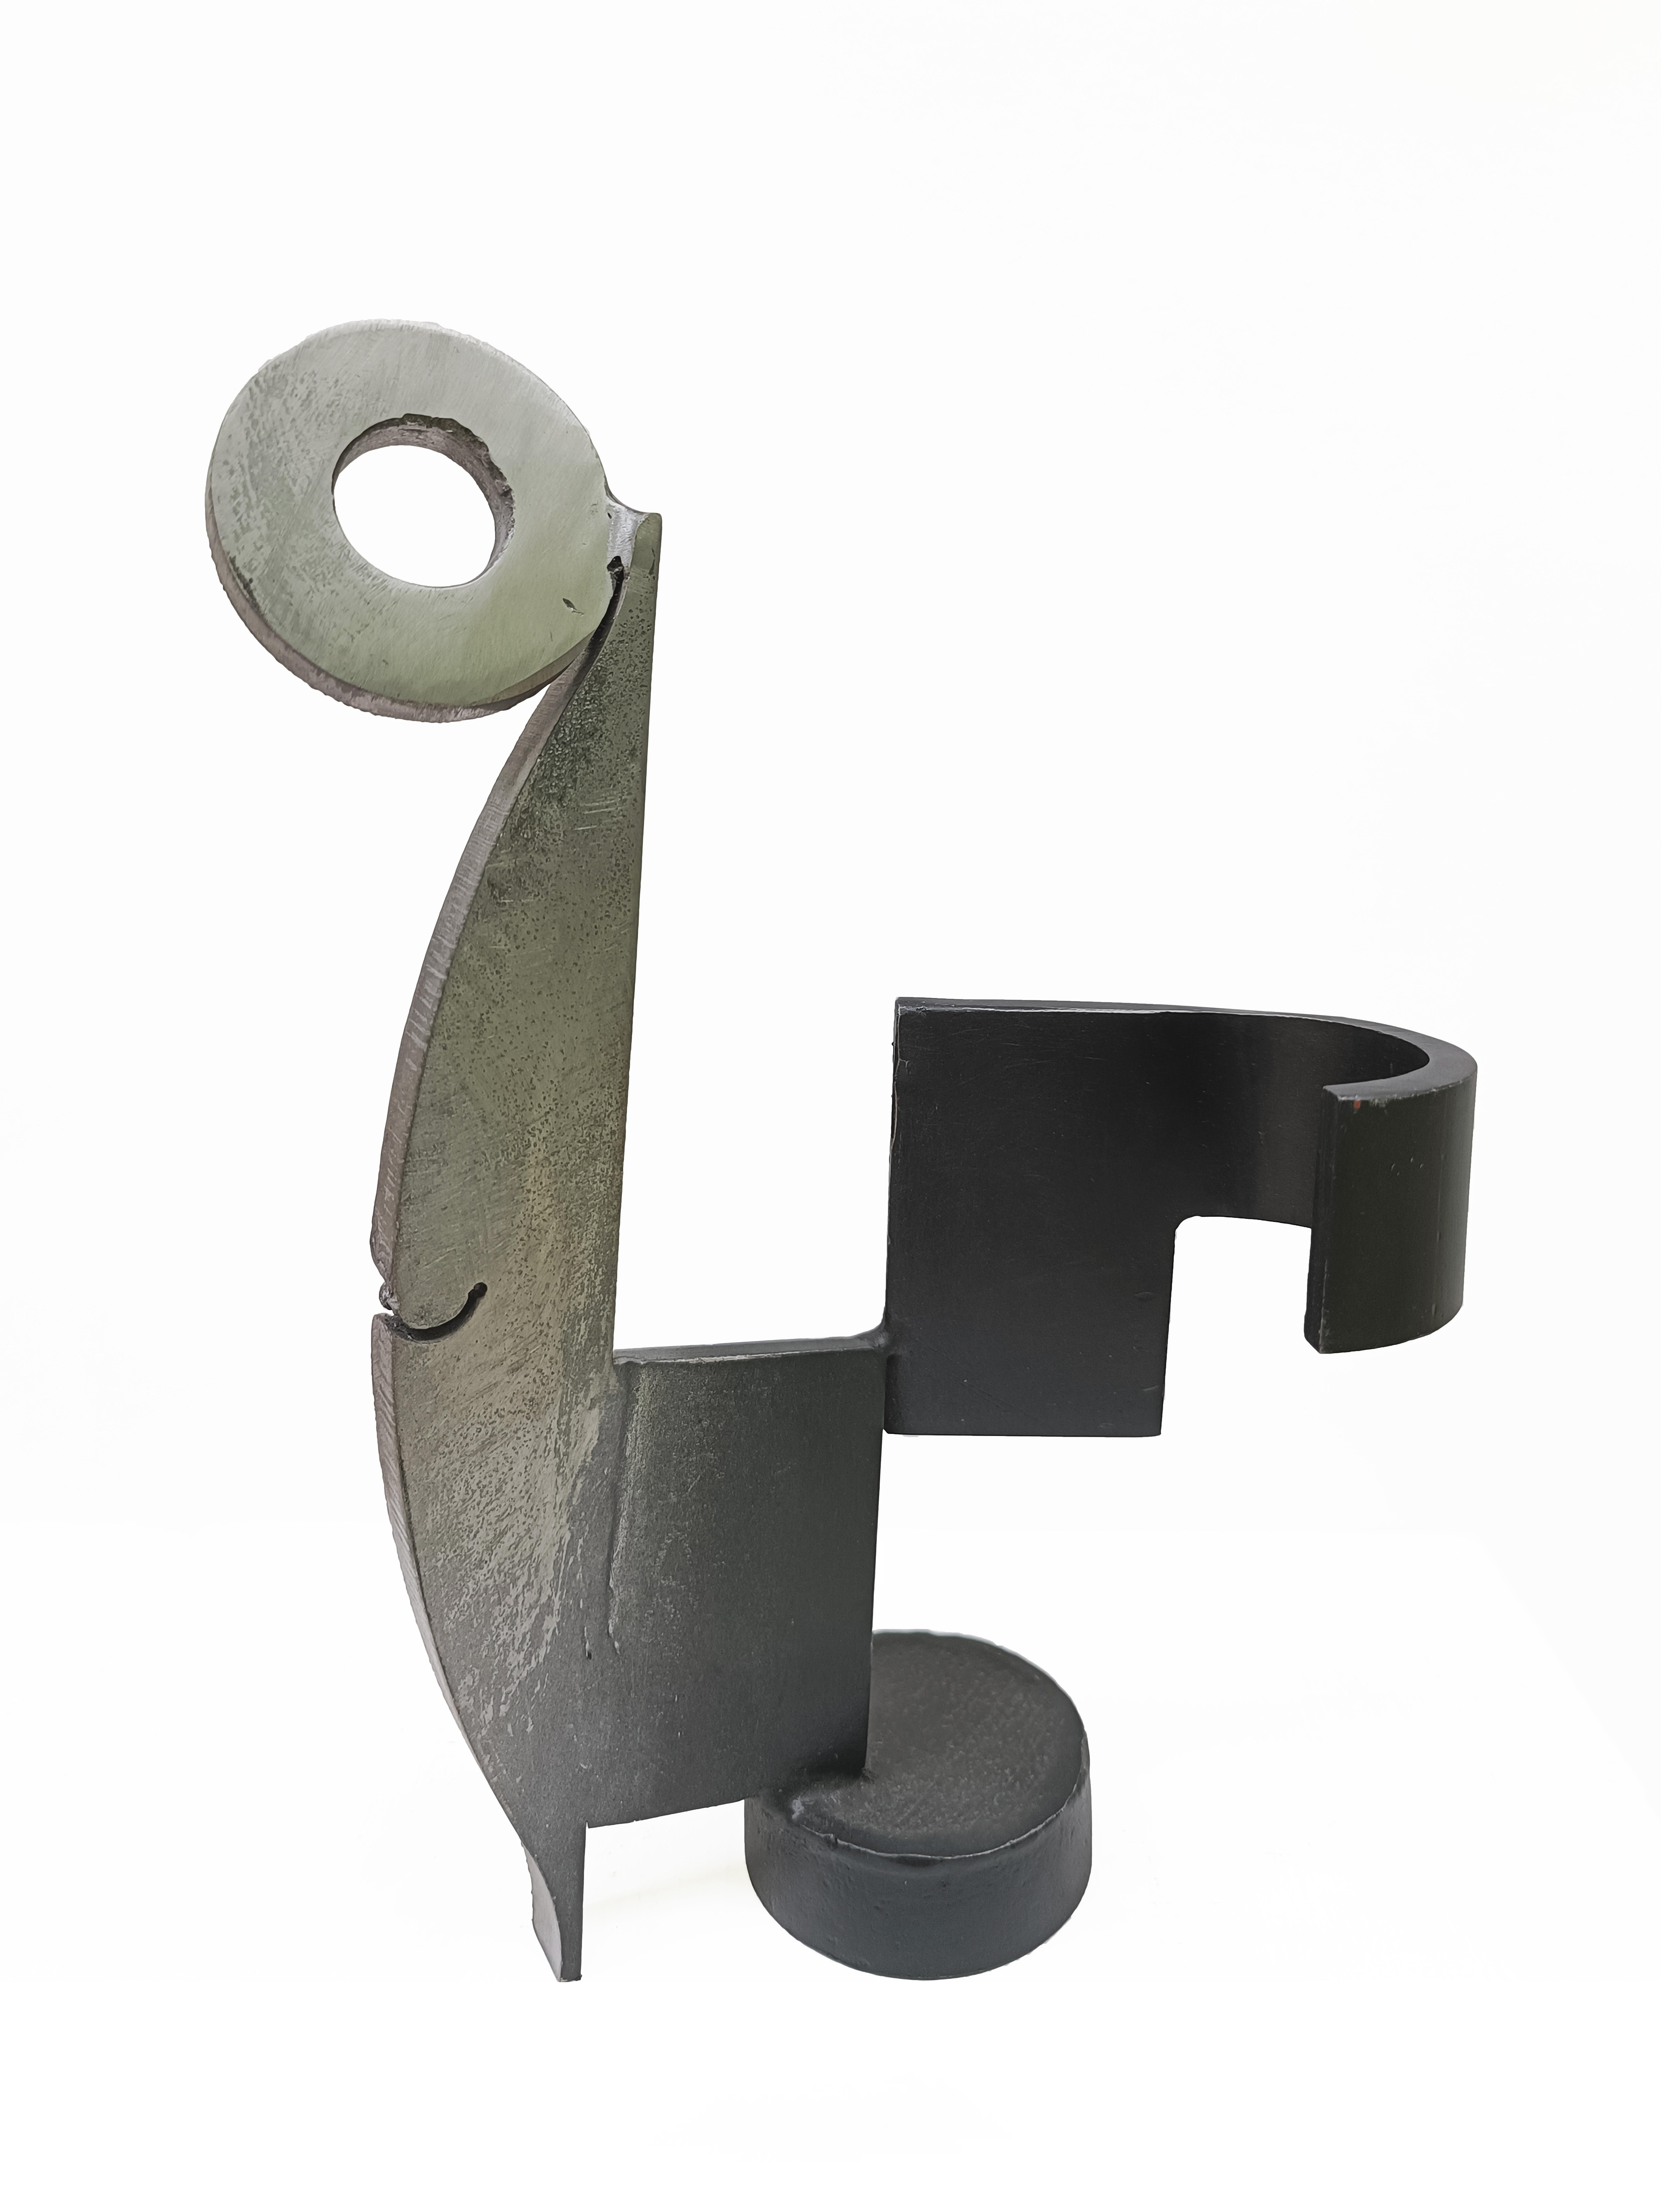 Appunto 3 - Sculpture by Alex Corno